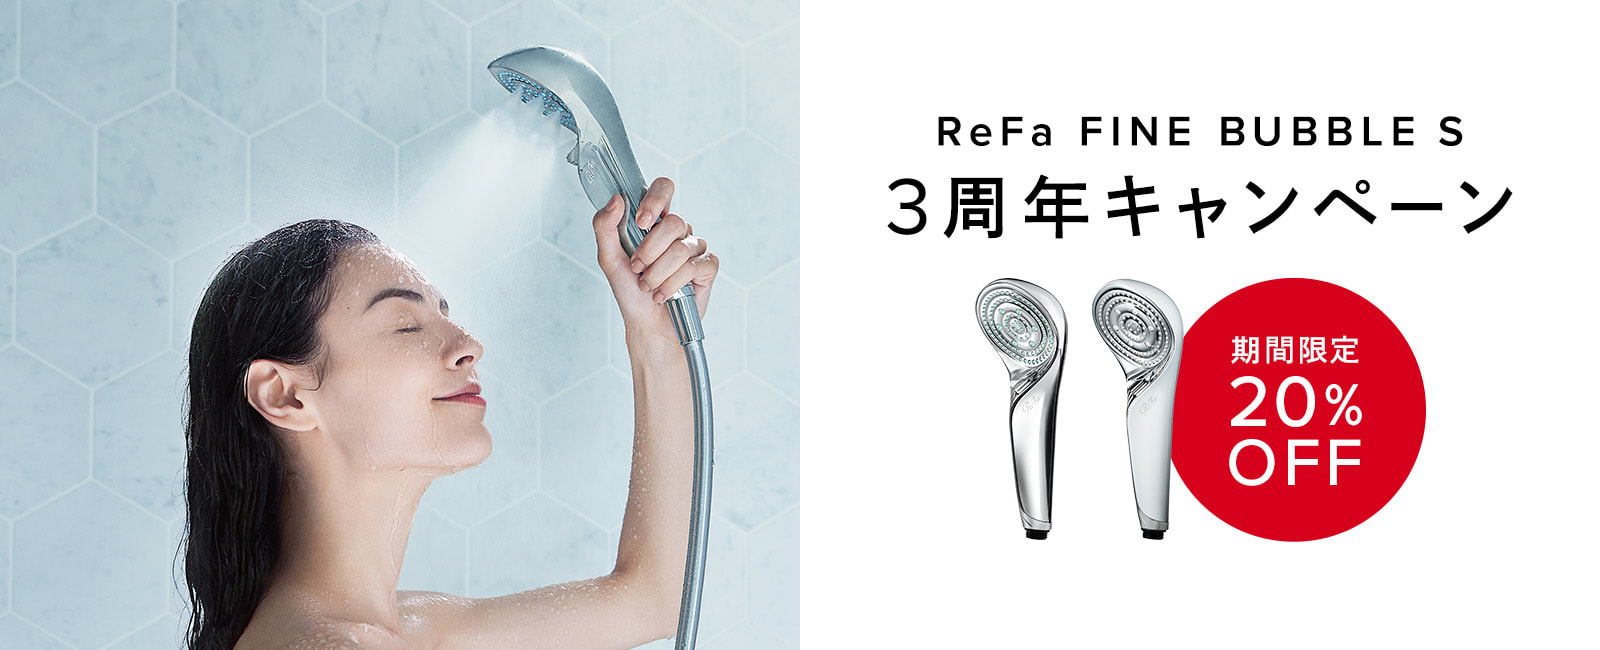 【期間限定20%OFF】ReFa FINE BUBBLE S 3周年キャンペーン開催中！　9/29(金)17:00まで